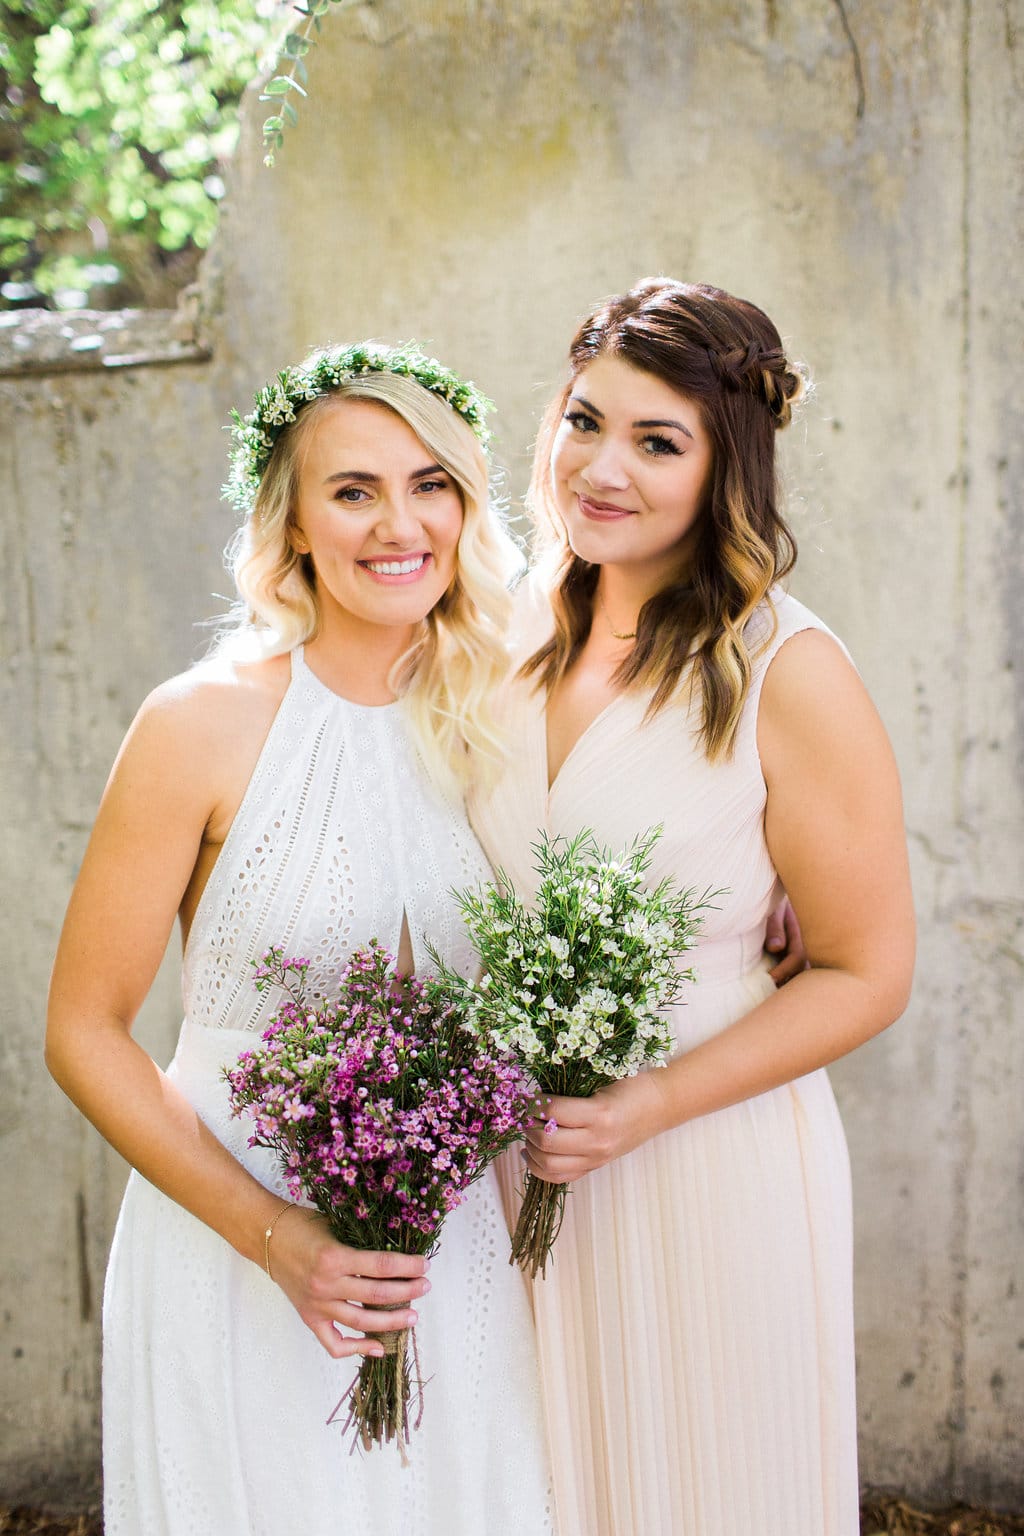 Eyelet Lace Wedding Dress in Utah Canyon Wedding - Love Maggie